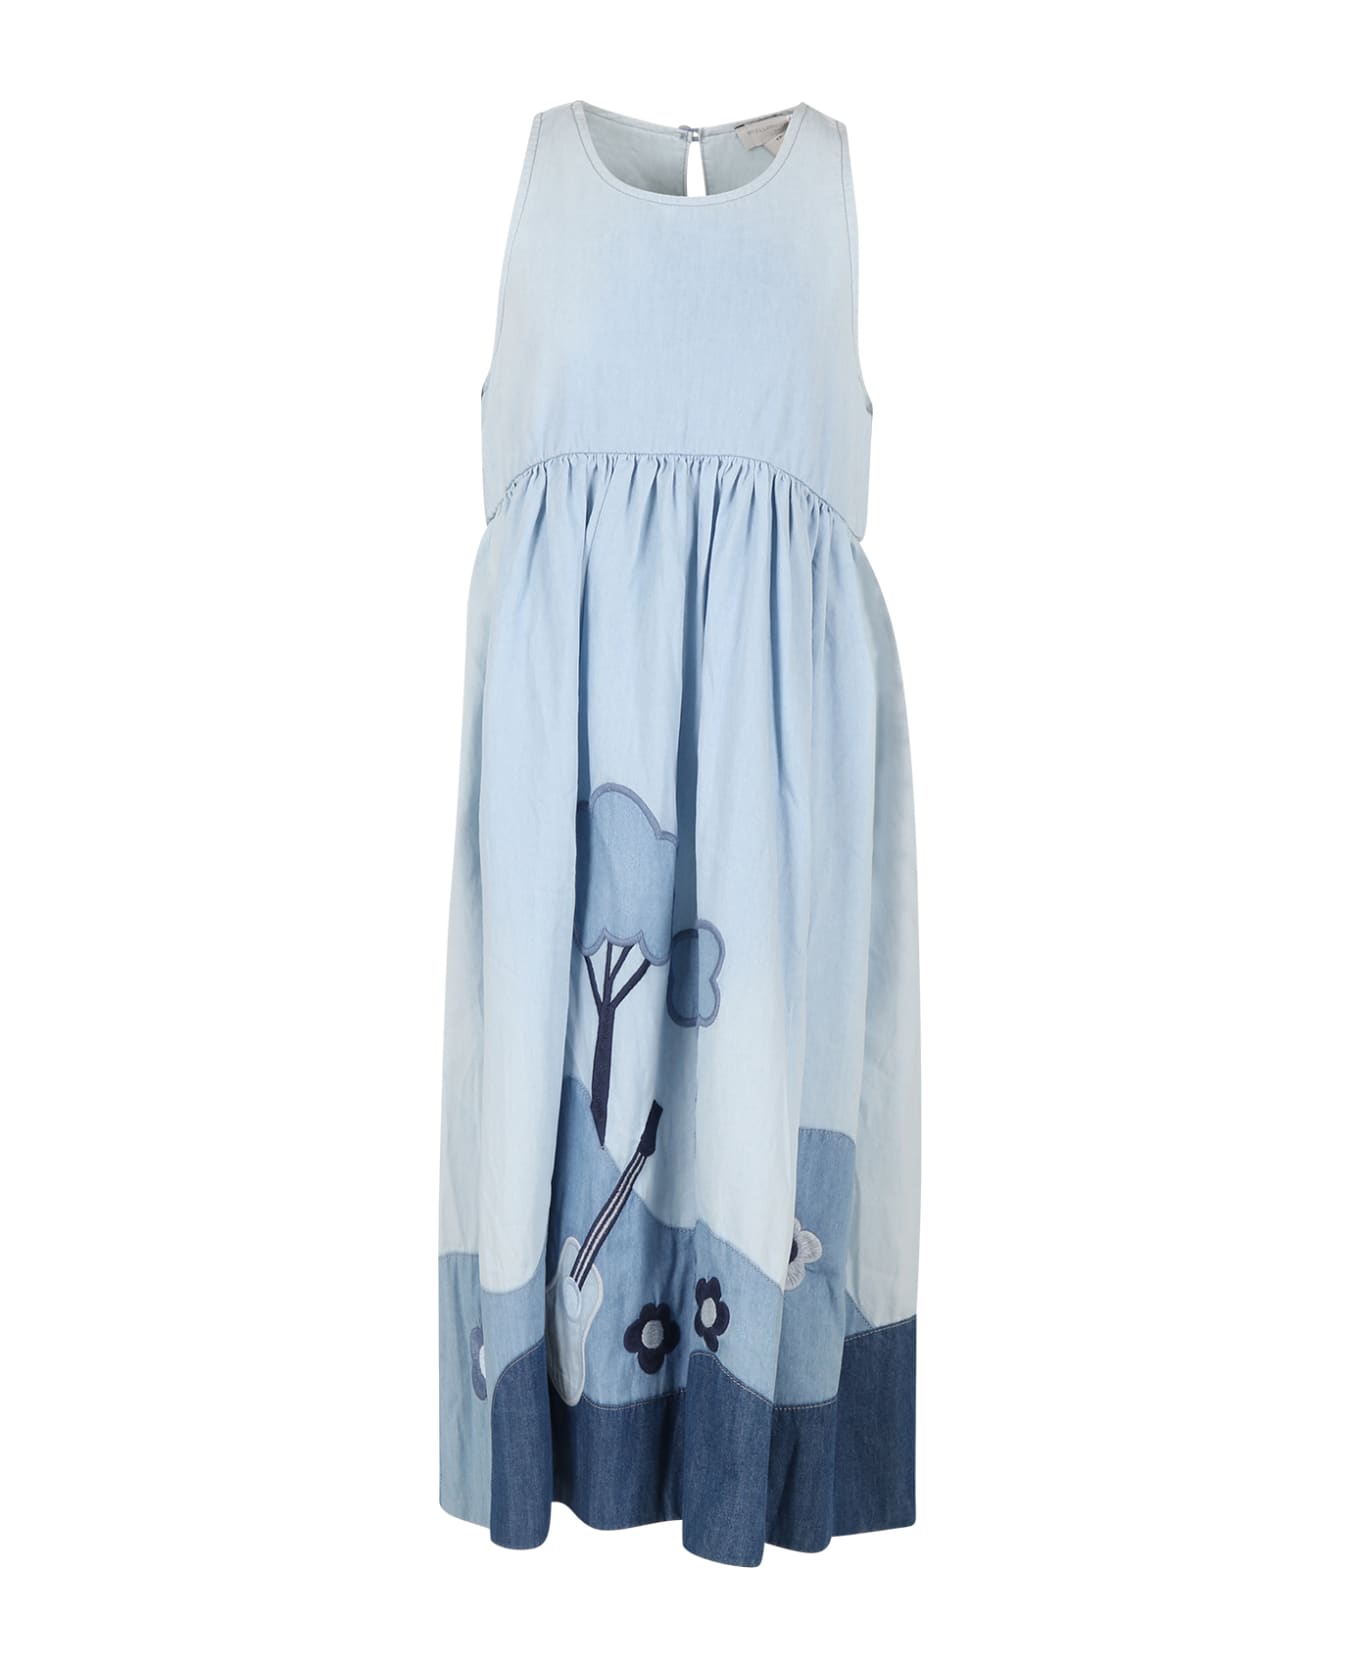 Stella McCartney Kids Light Blue Dress For Girl With Flowers - Light Blue